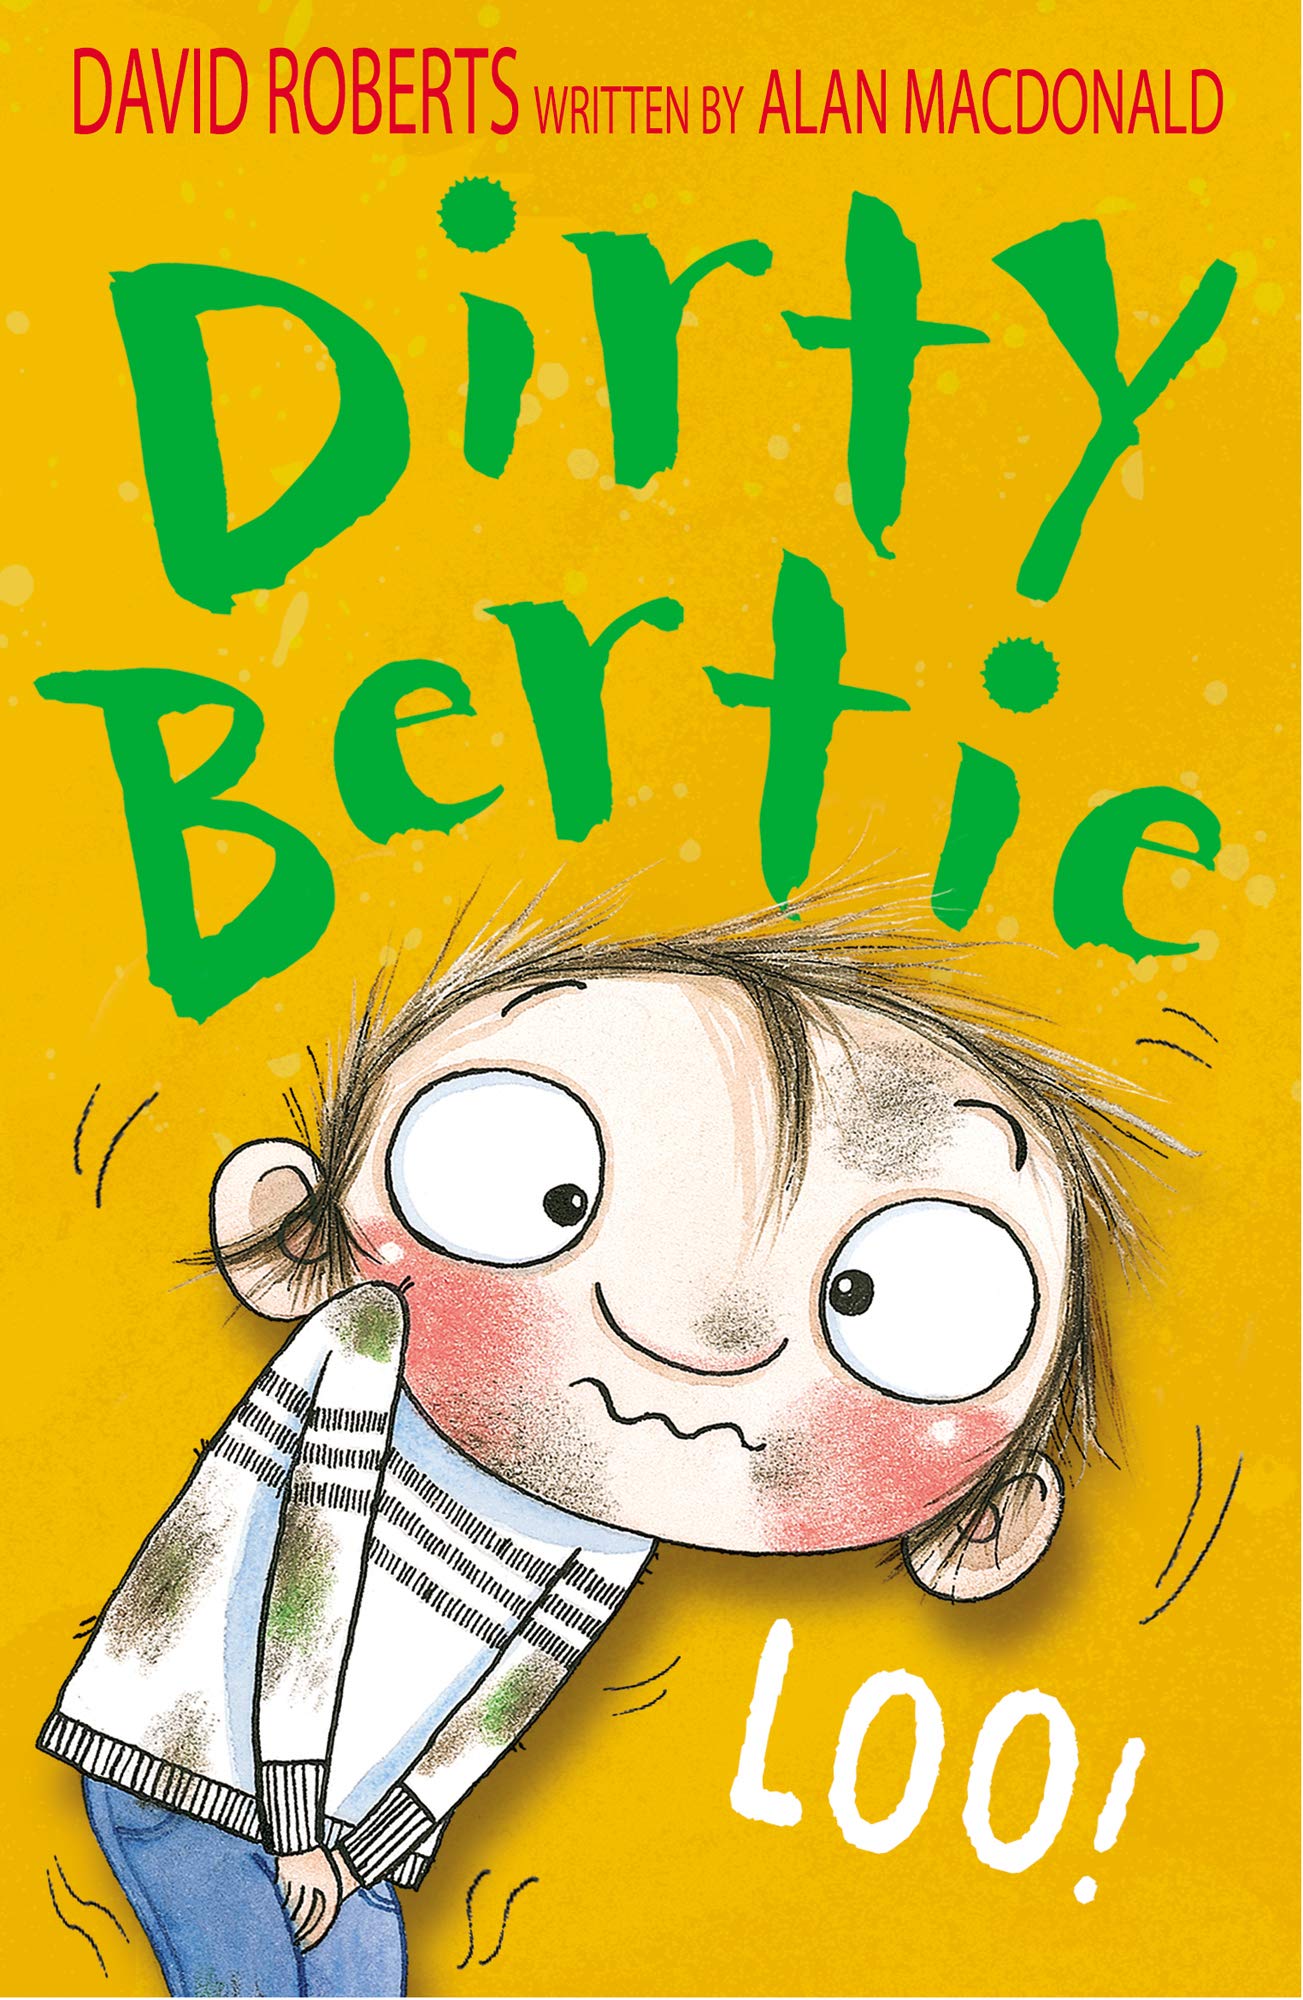 Dirty Bertie: Loo!